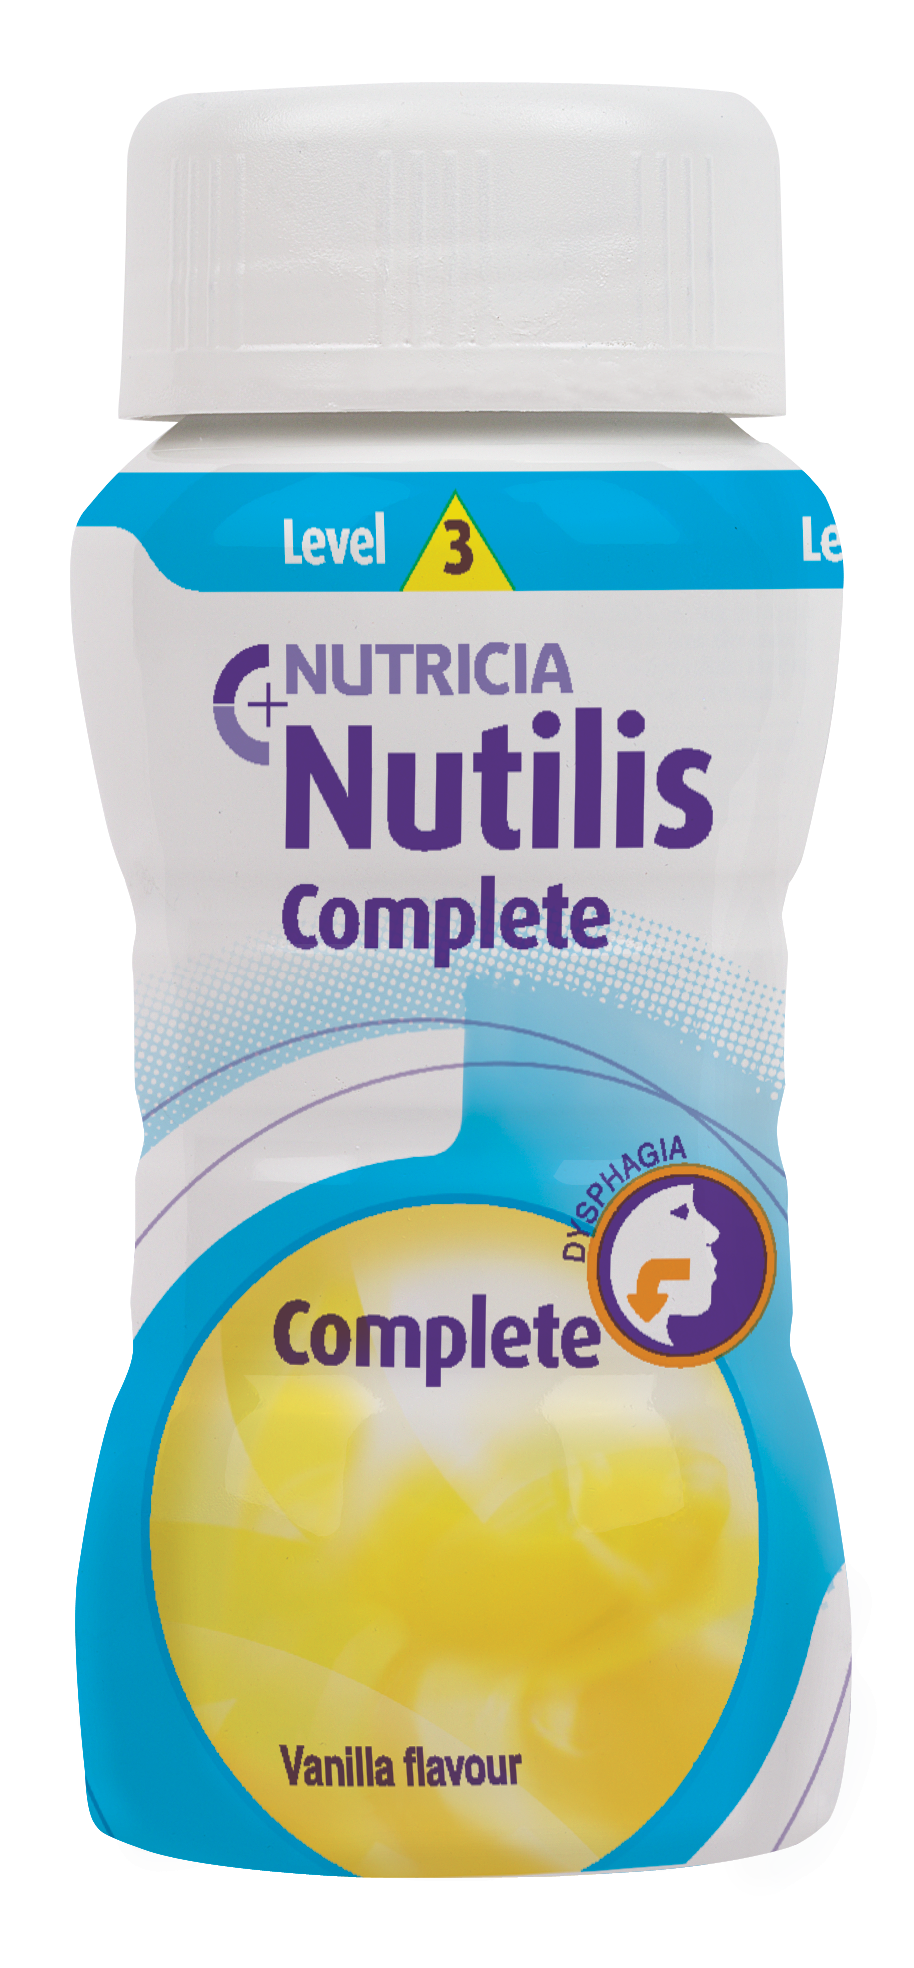 Nutilis Complete Drink Level 3